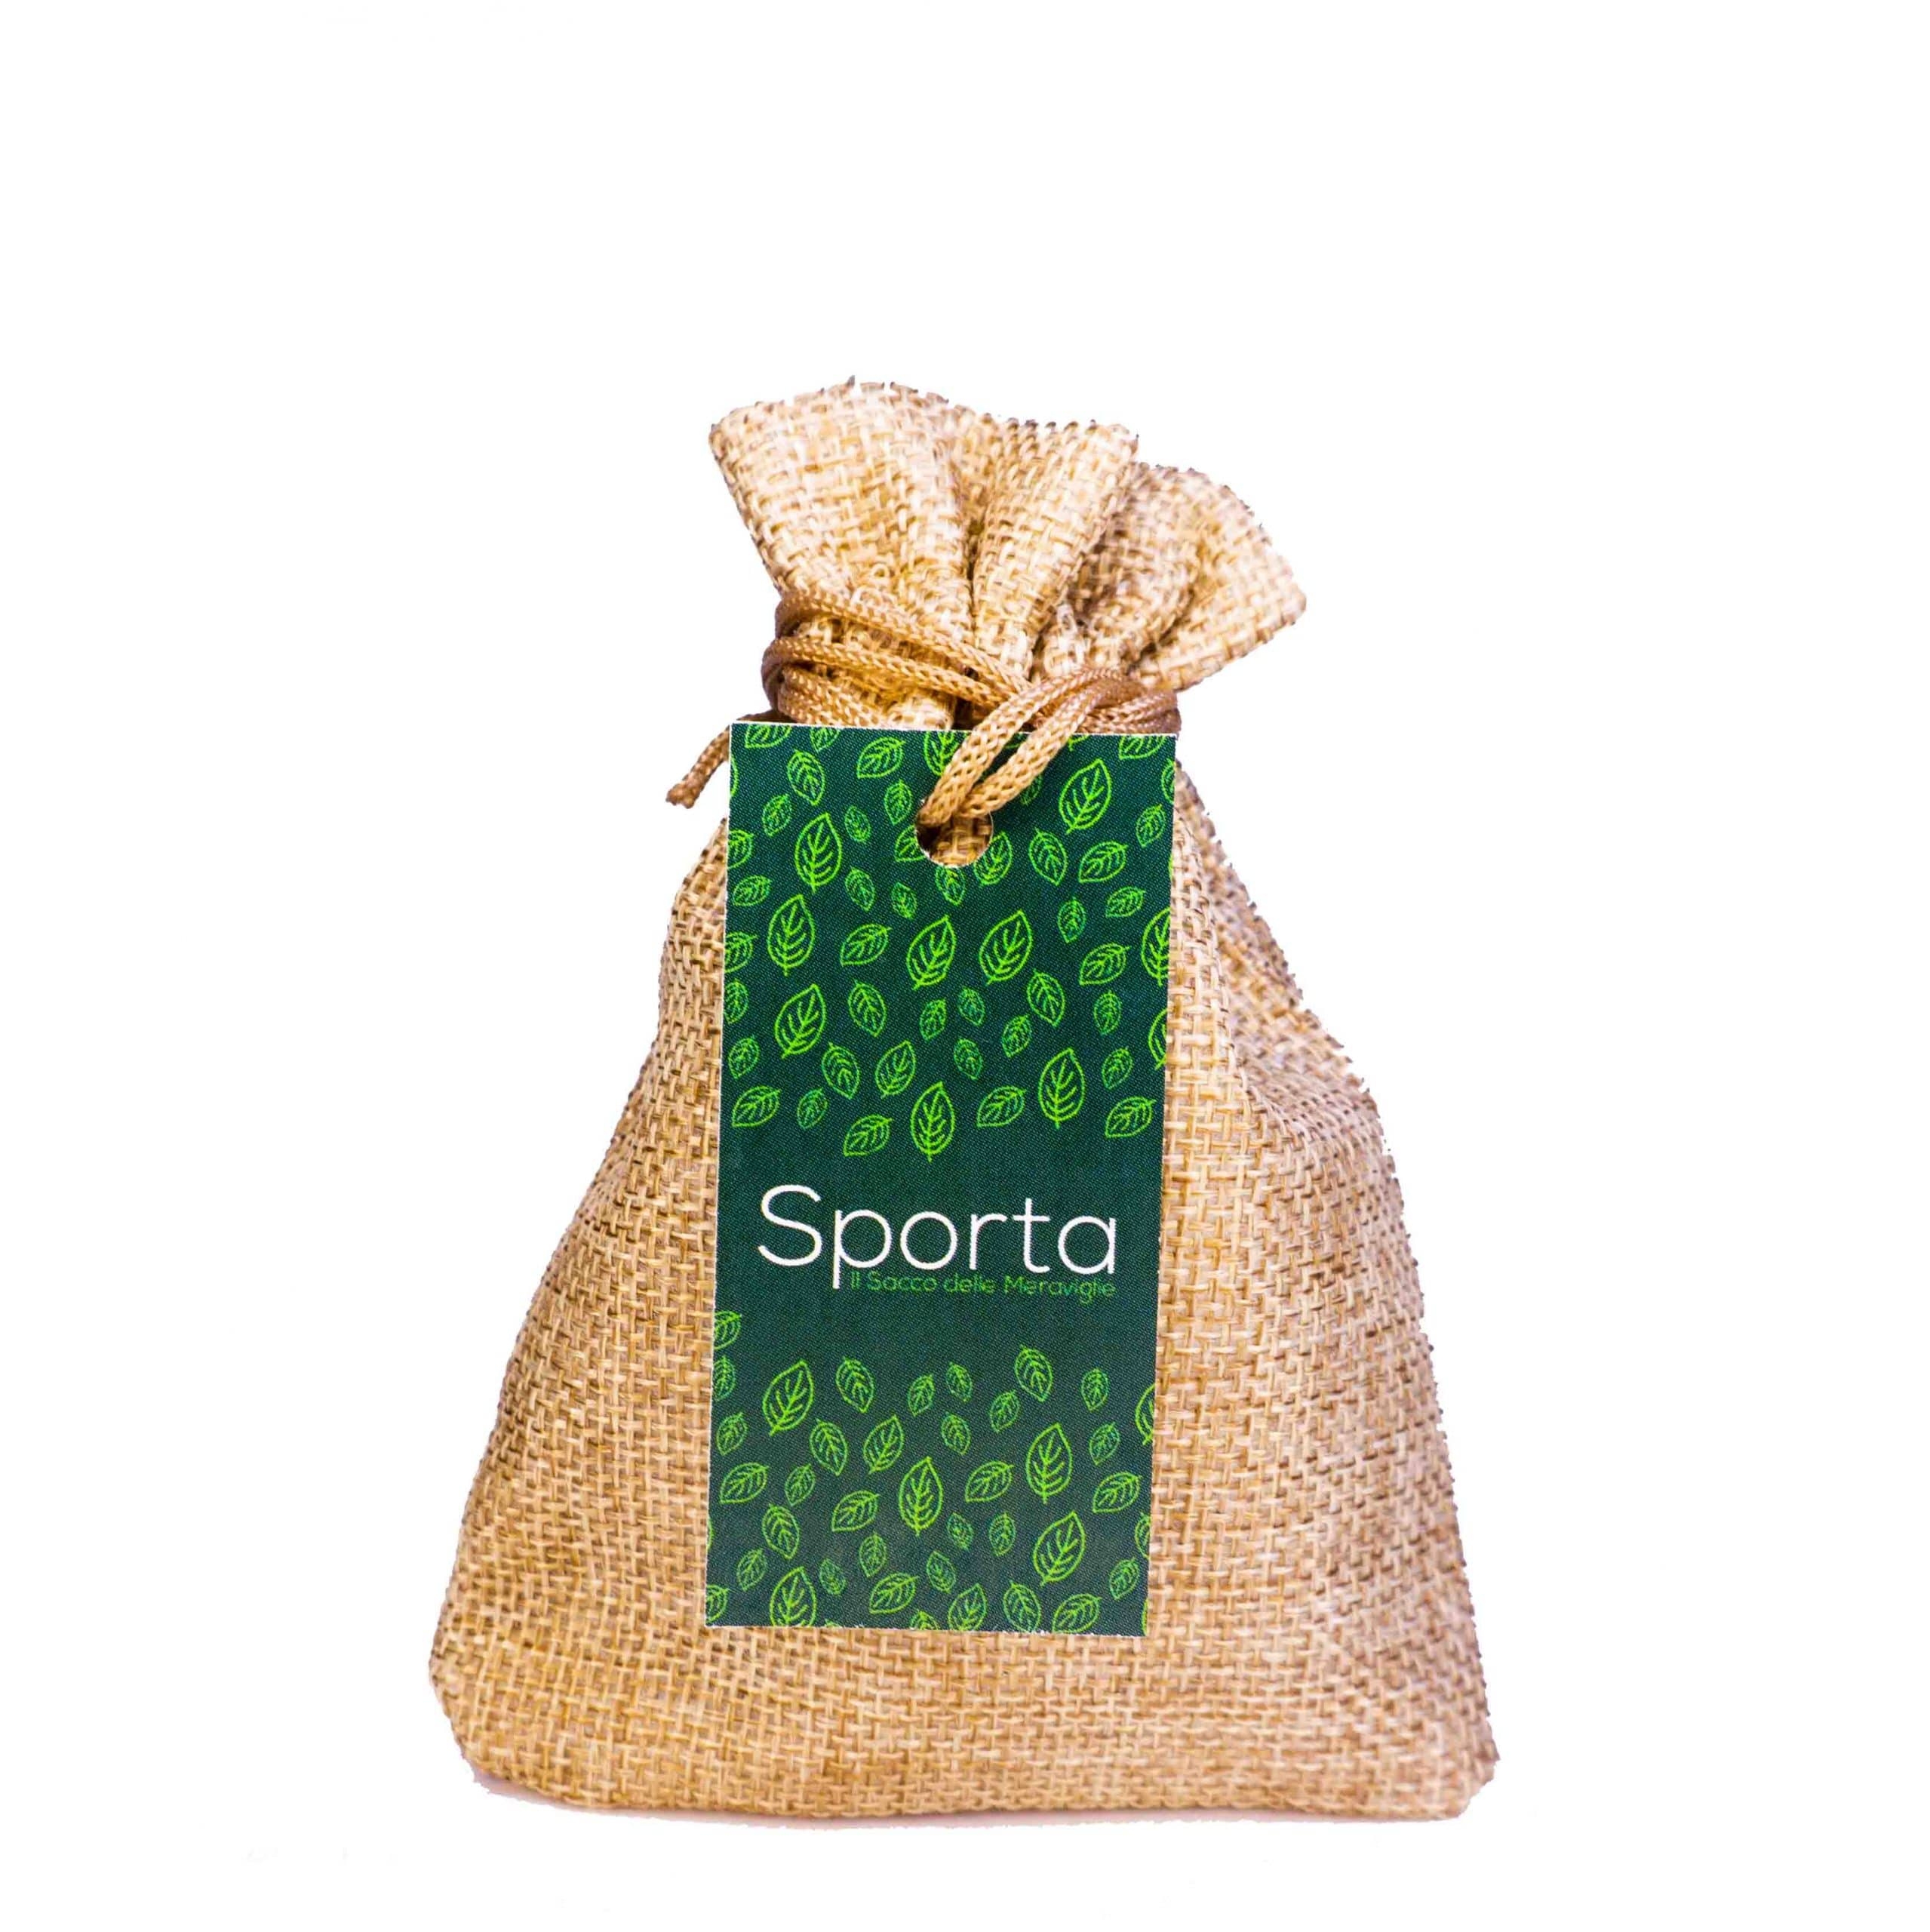 Sporta (peperoncino piccante/timo) - Ecofactory